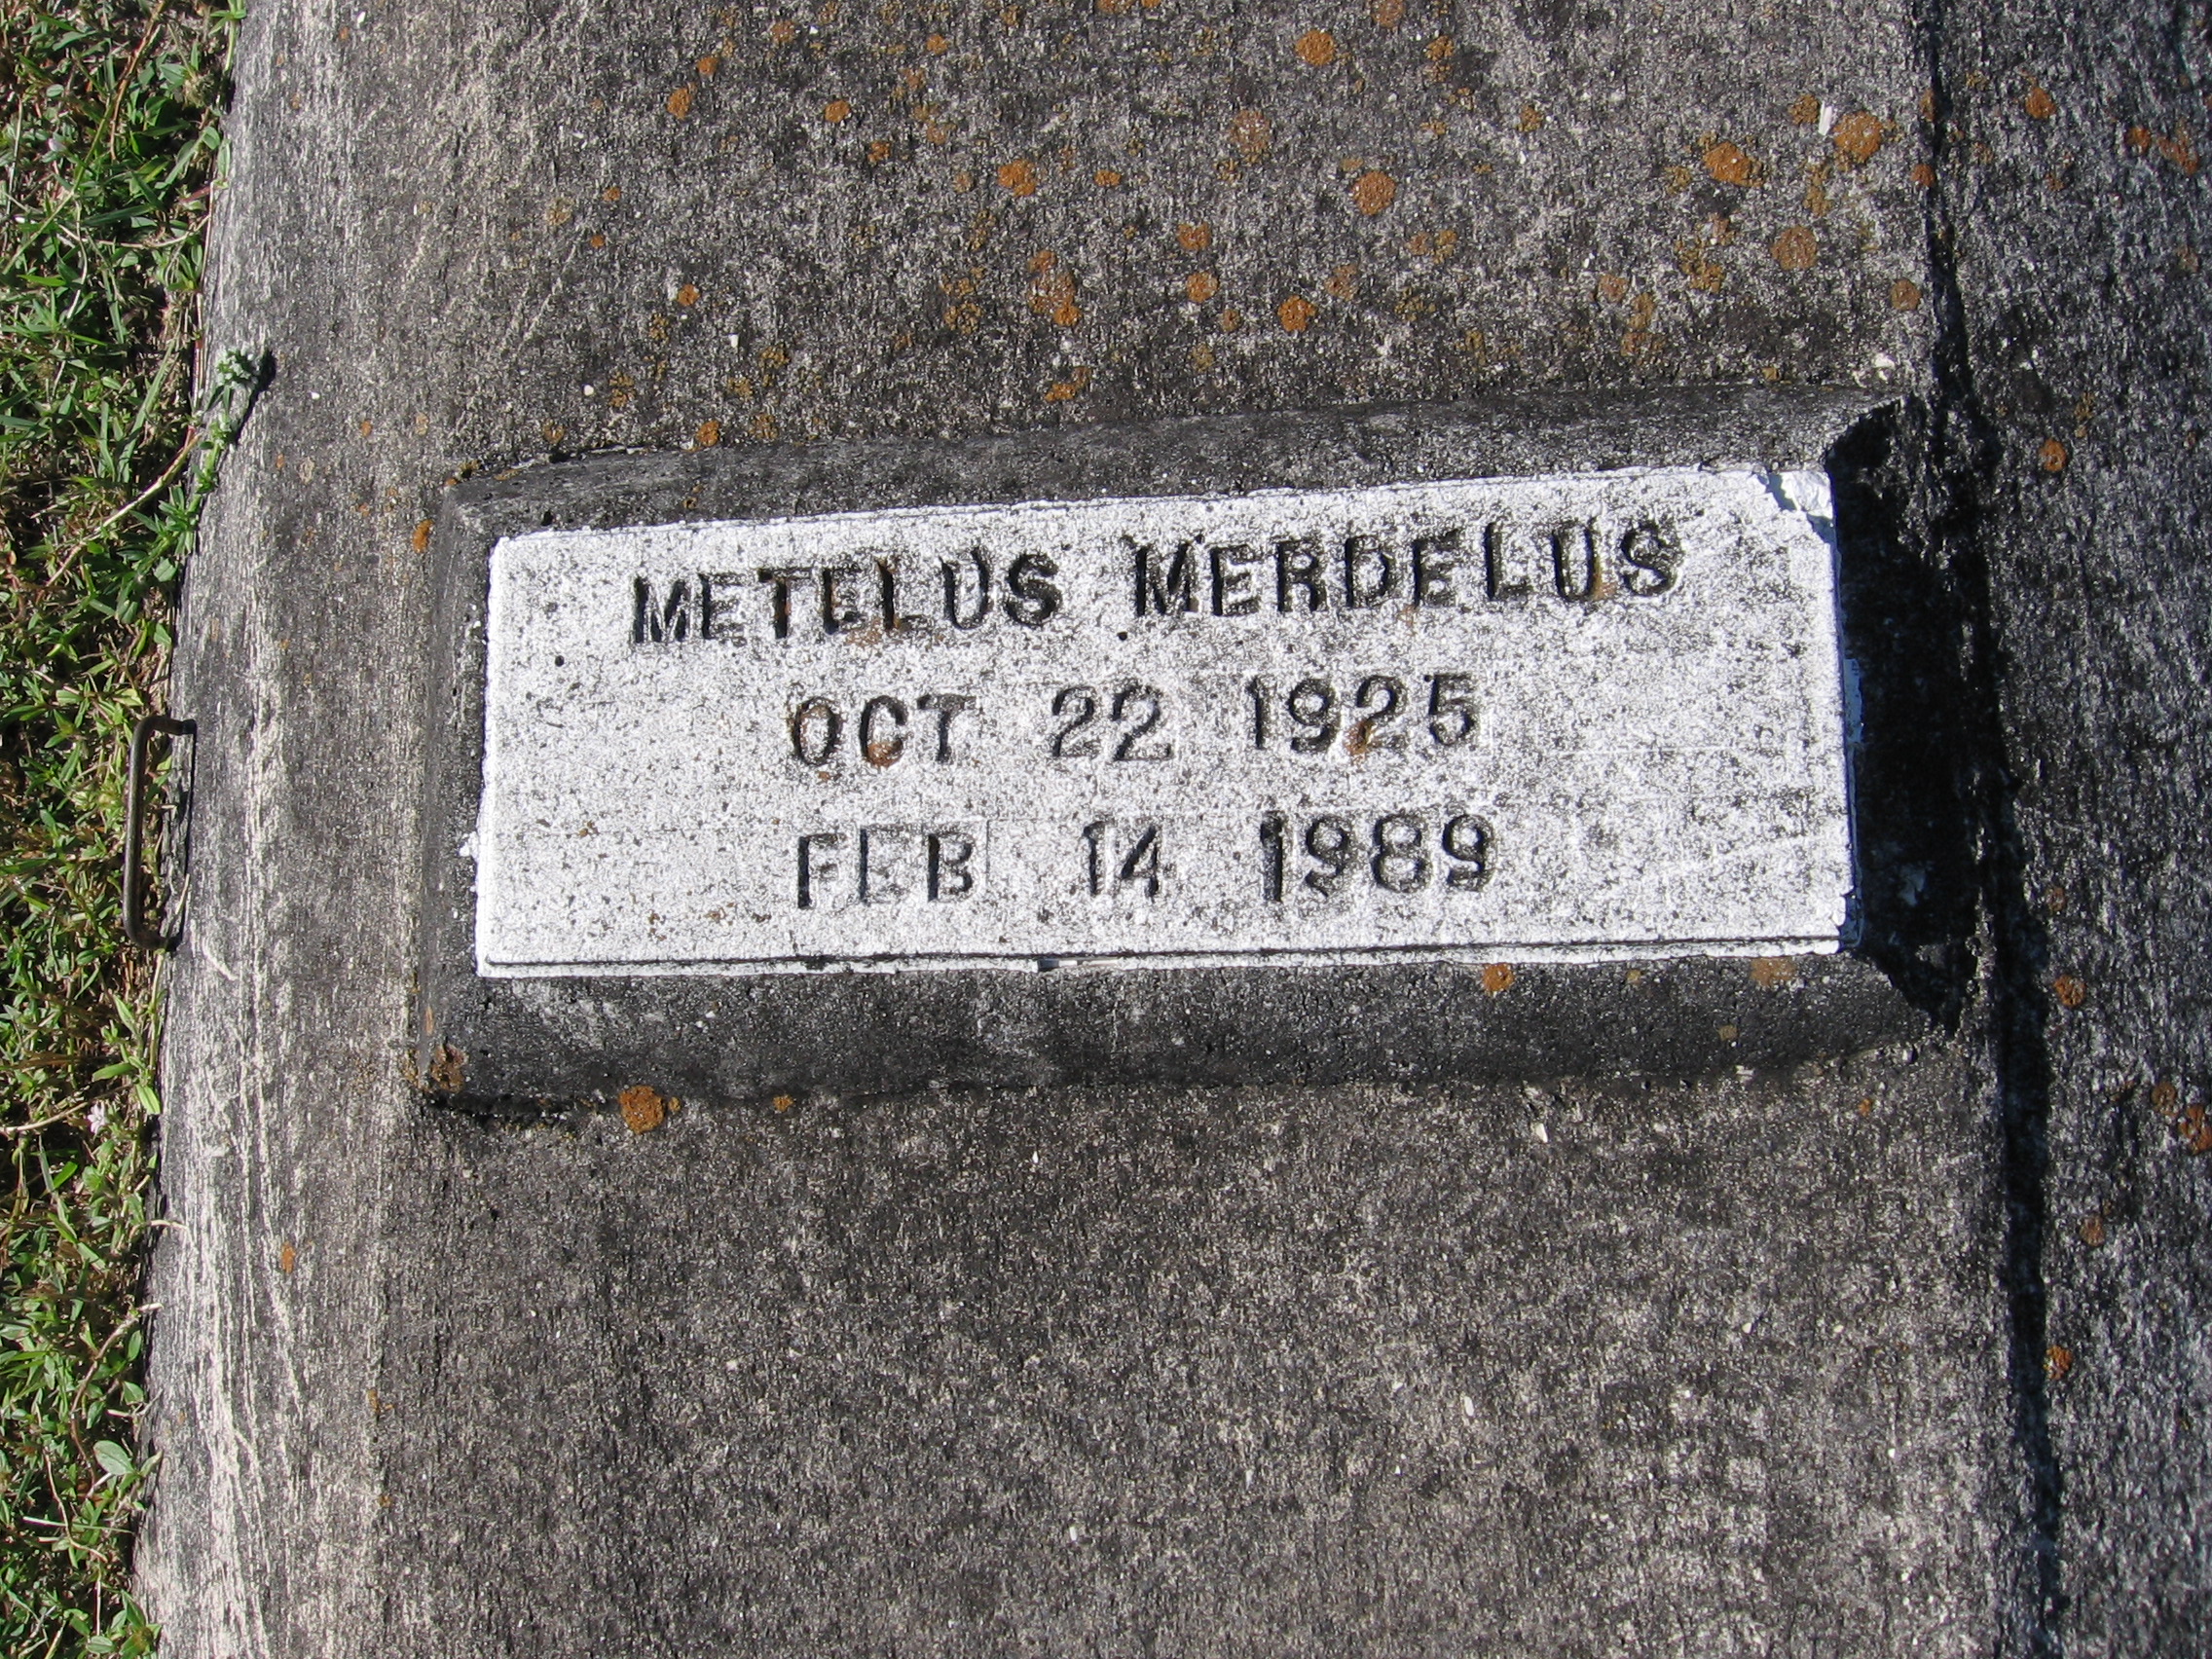 Metelus Merdelus